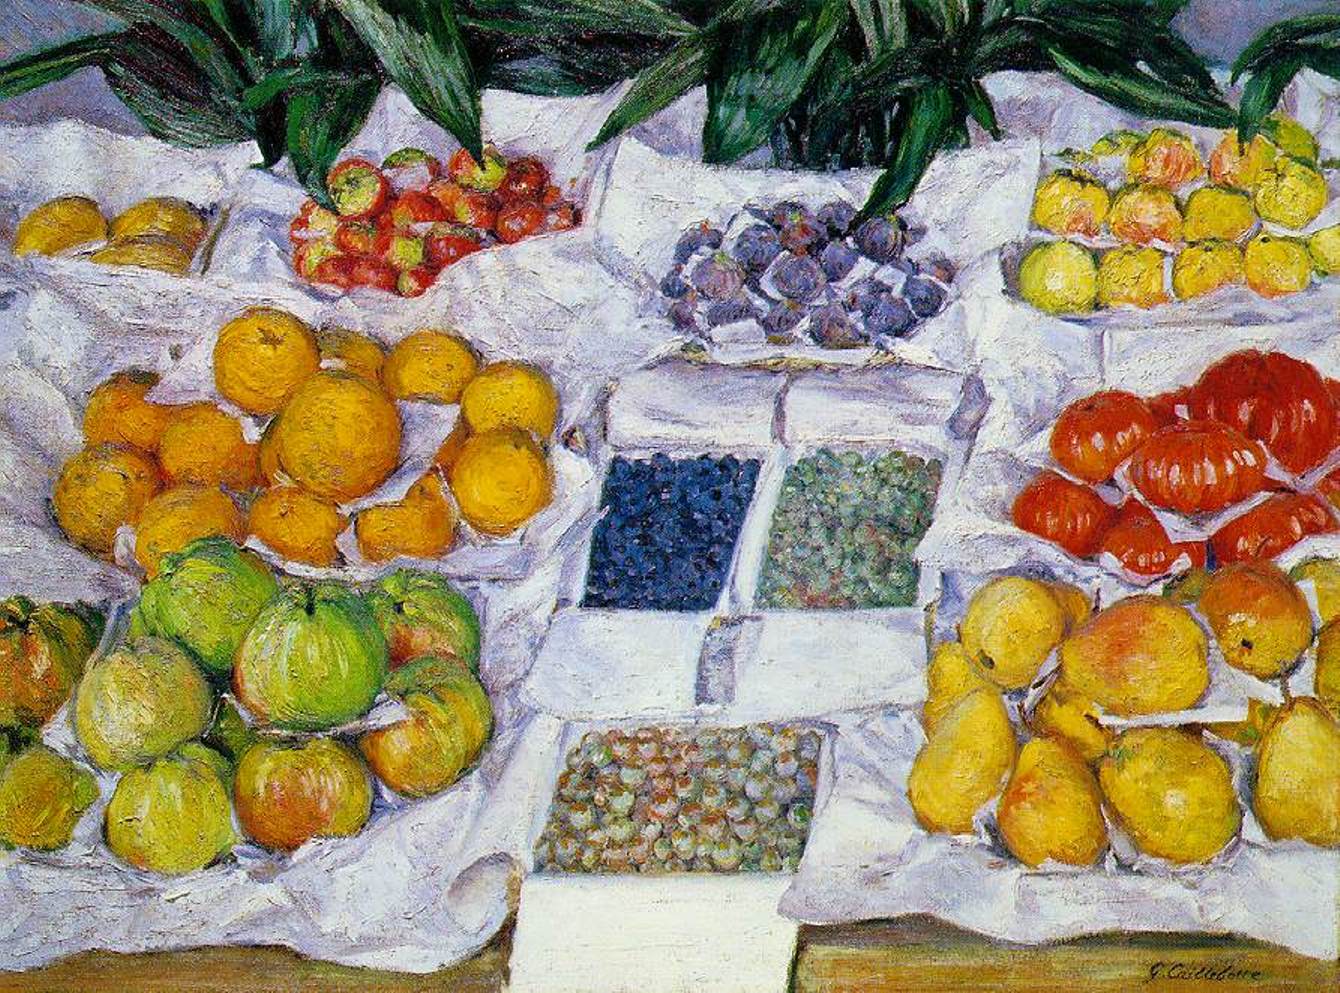 Caillebotte. Frutas expuestas en un escaparate - hacia 1881-82